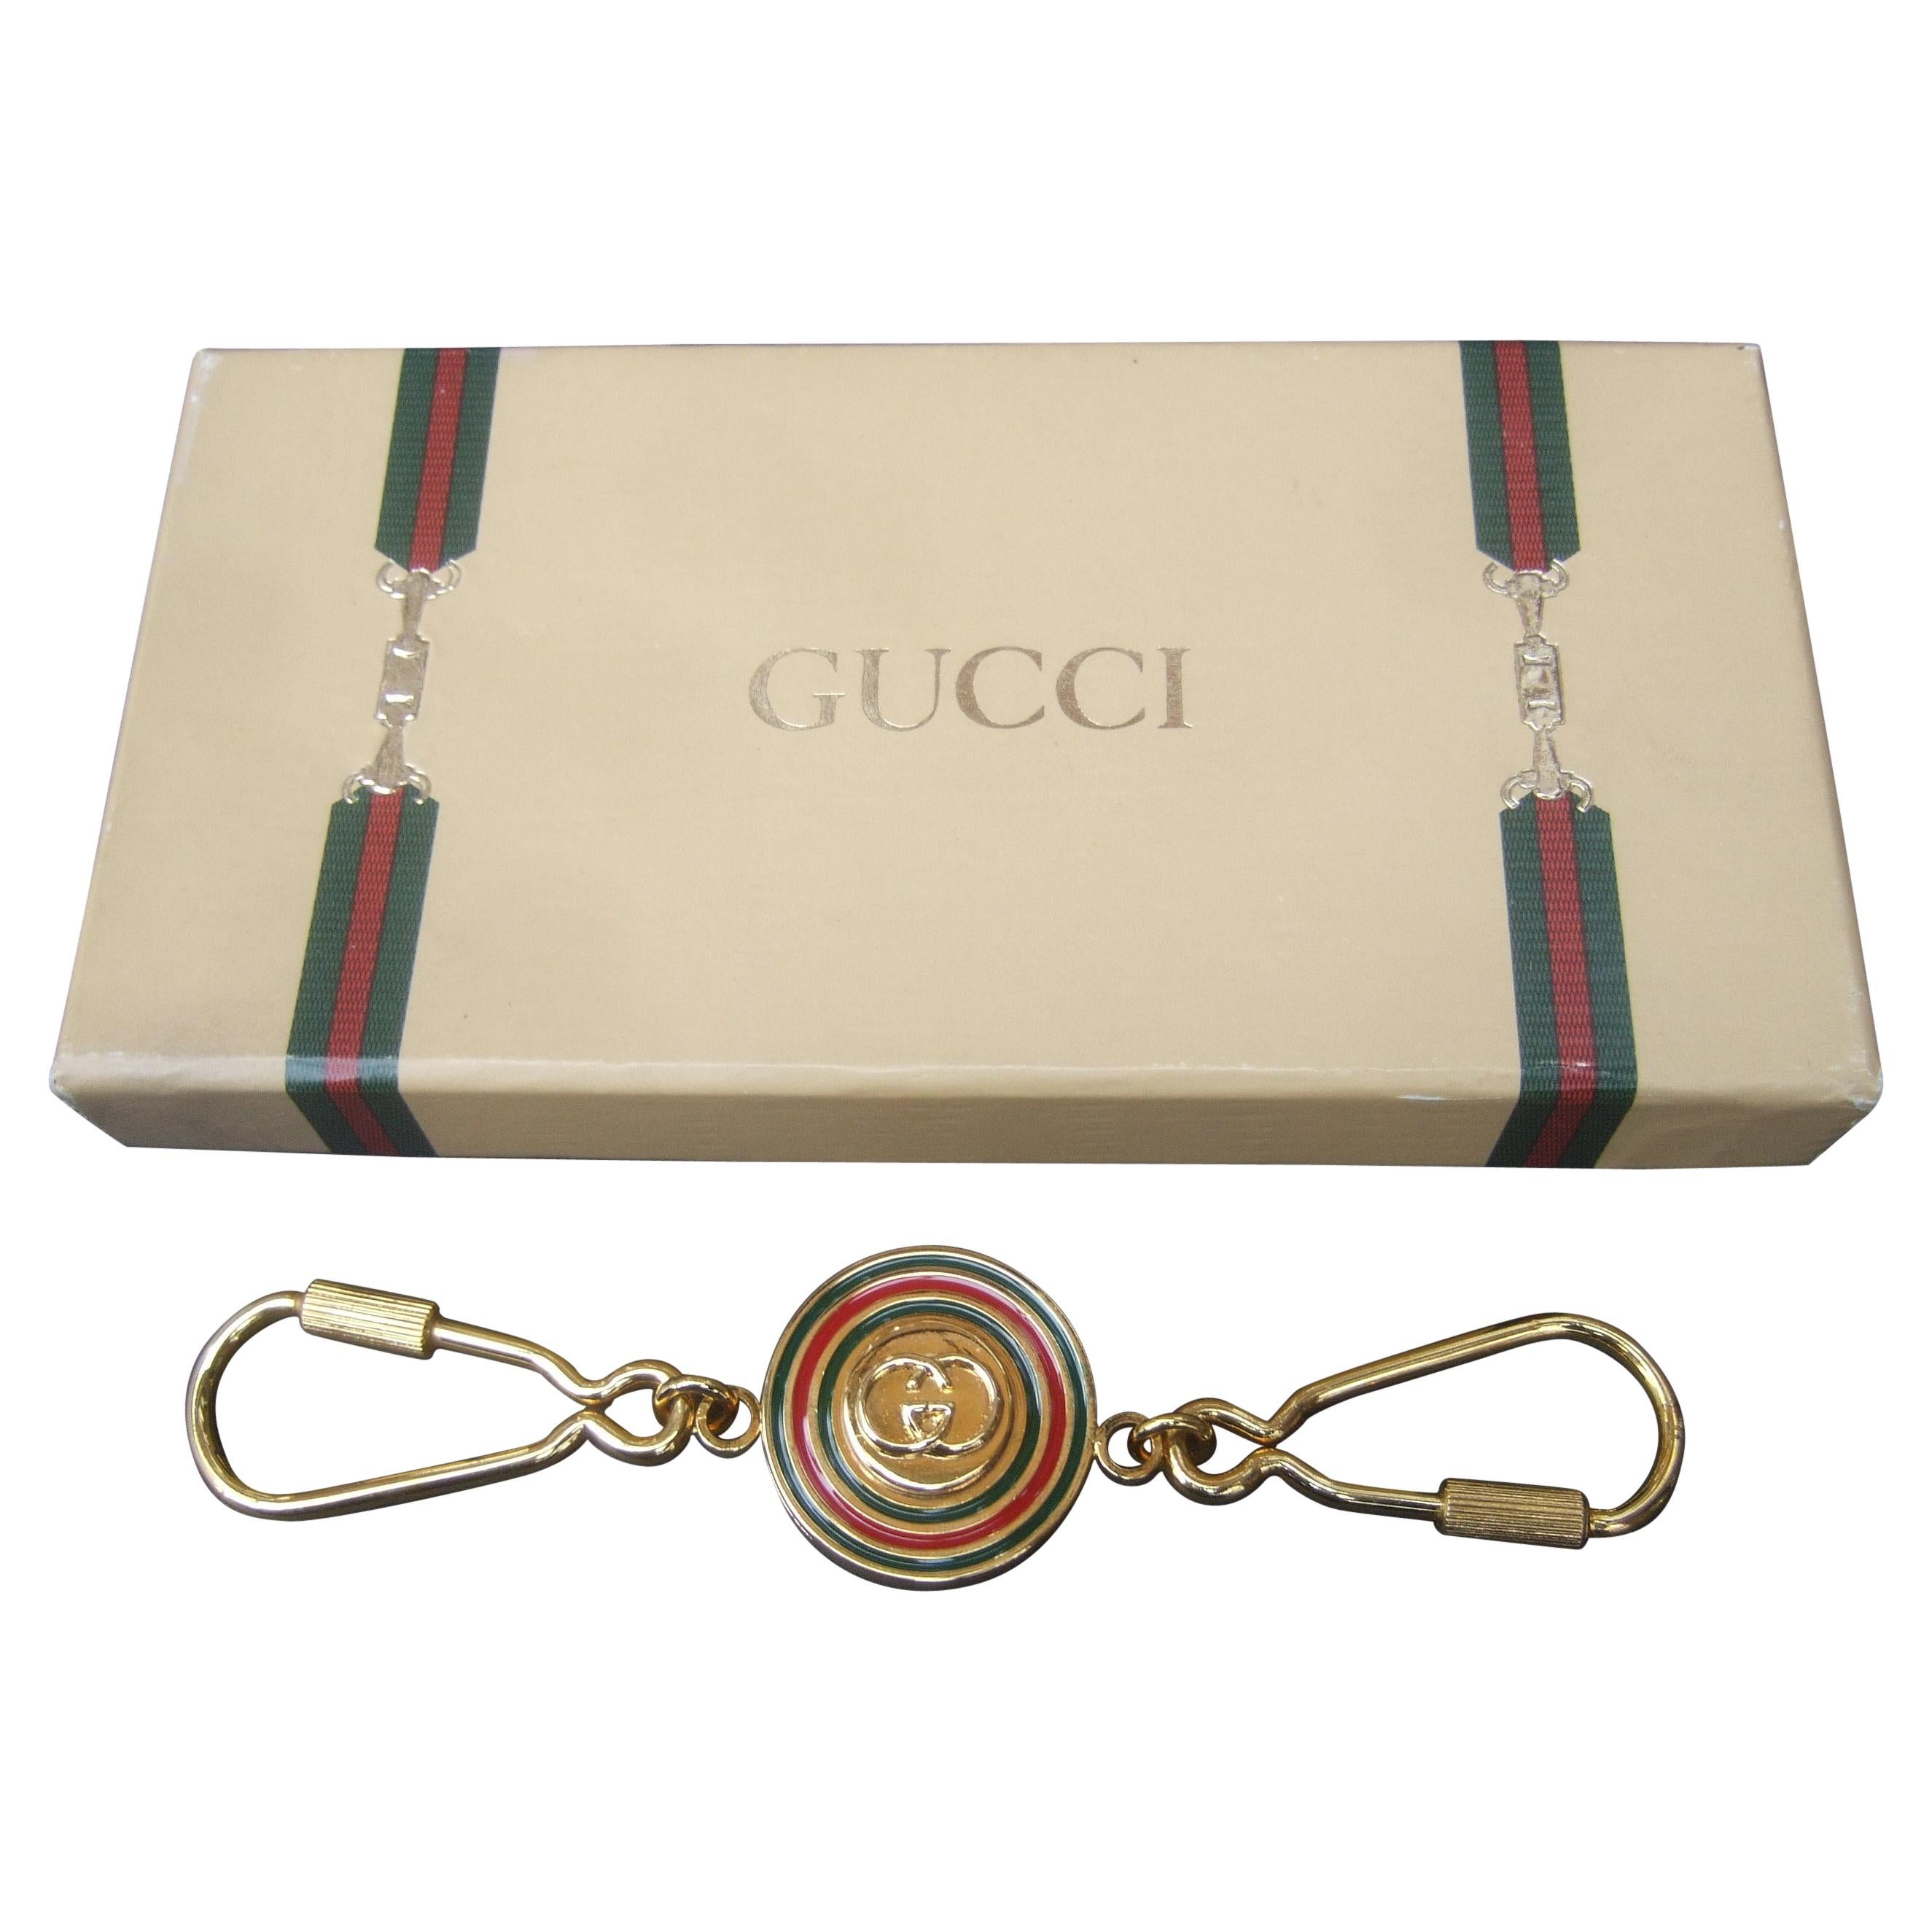 Gucci Italy Gilt Enamel Keychain in Original Gucci Presentation Box c 1980